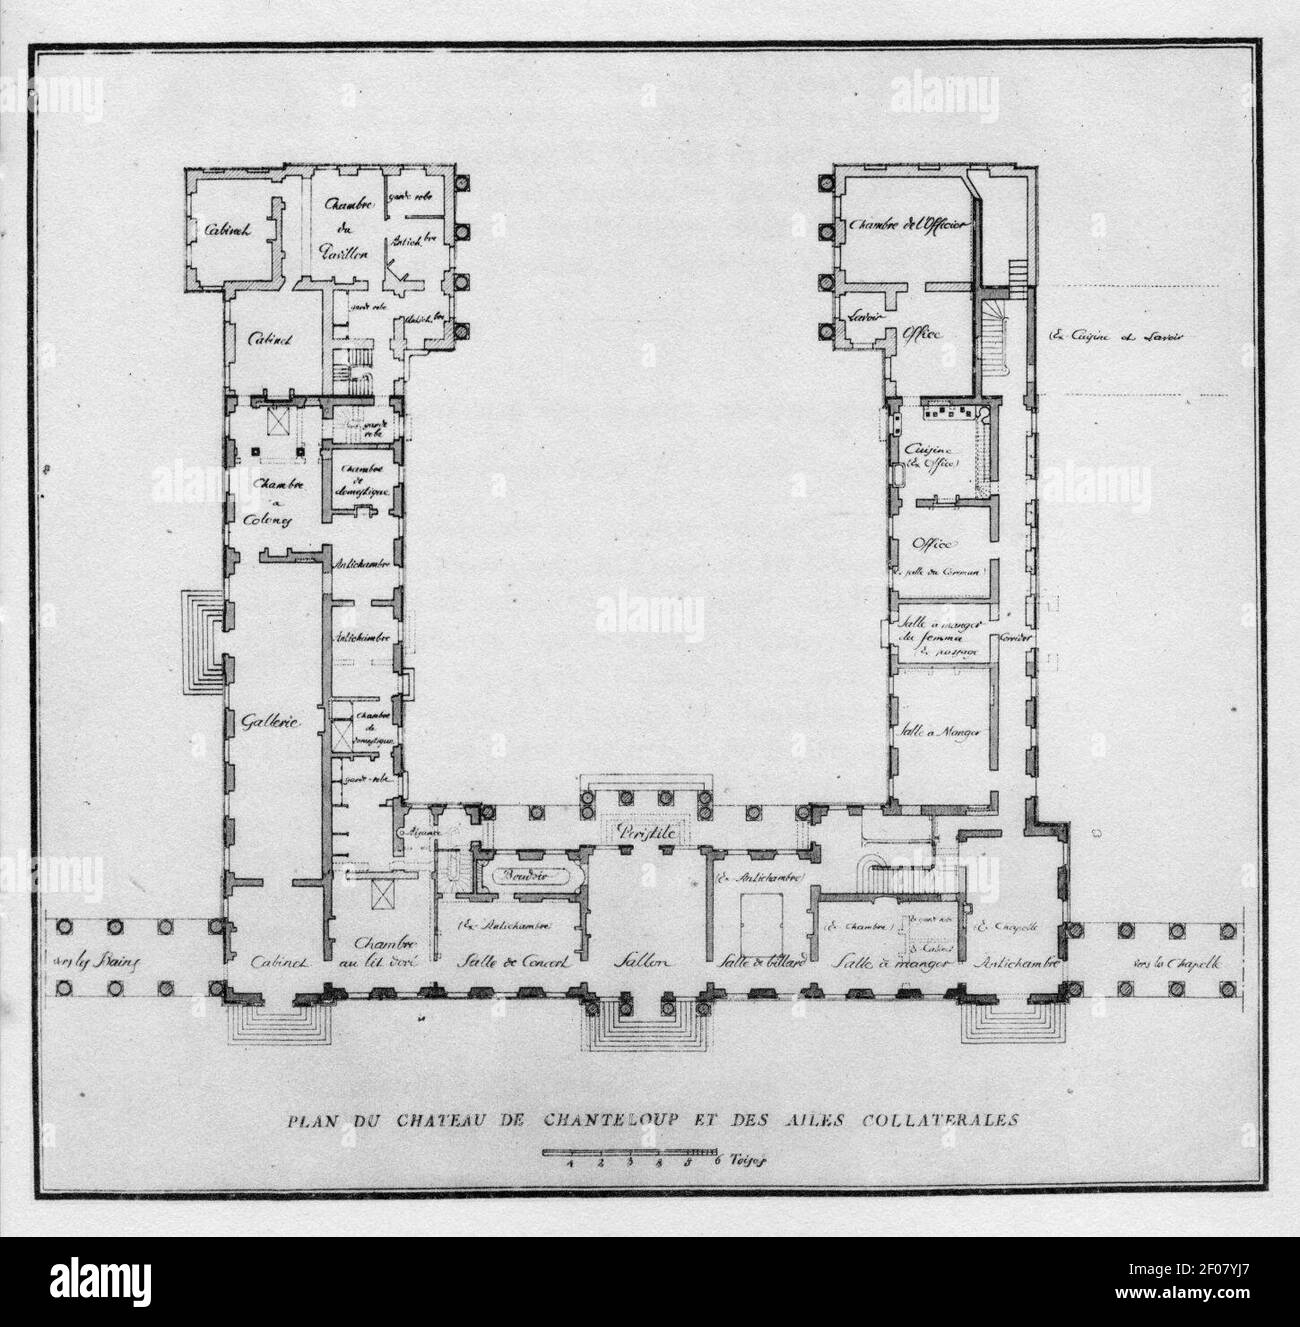 Plan du château de Chanteloup, rez-de-chaussée – André 1935, after p. 20  Stock Photo - Alamy